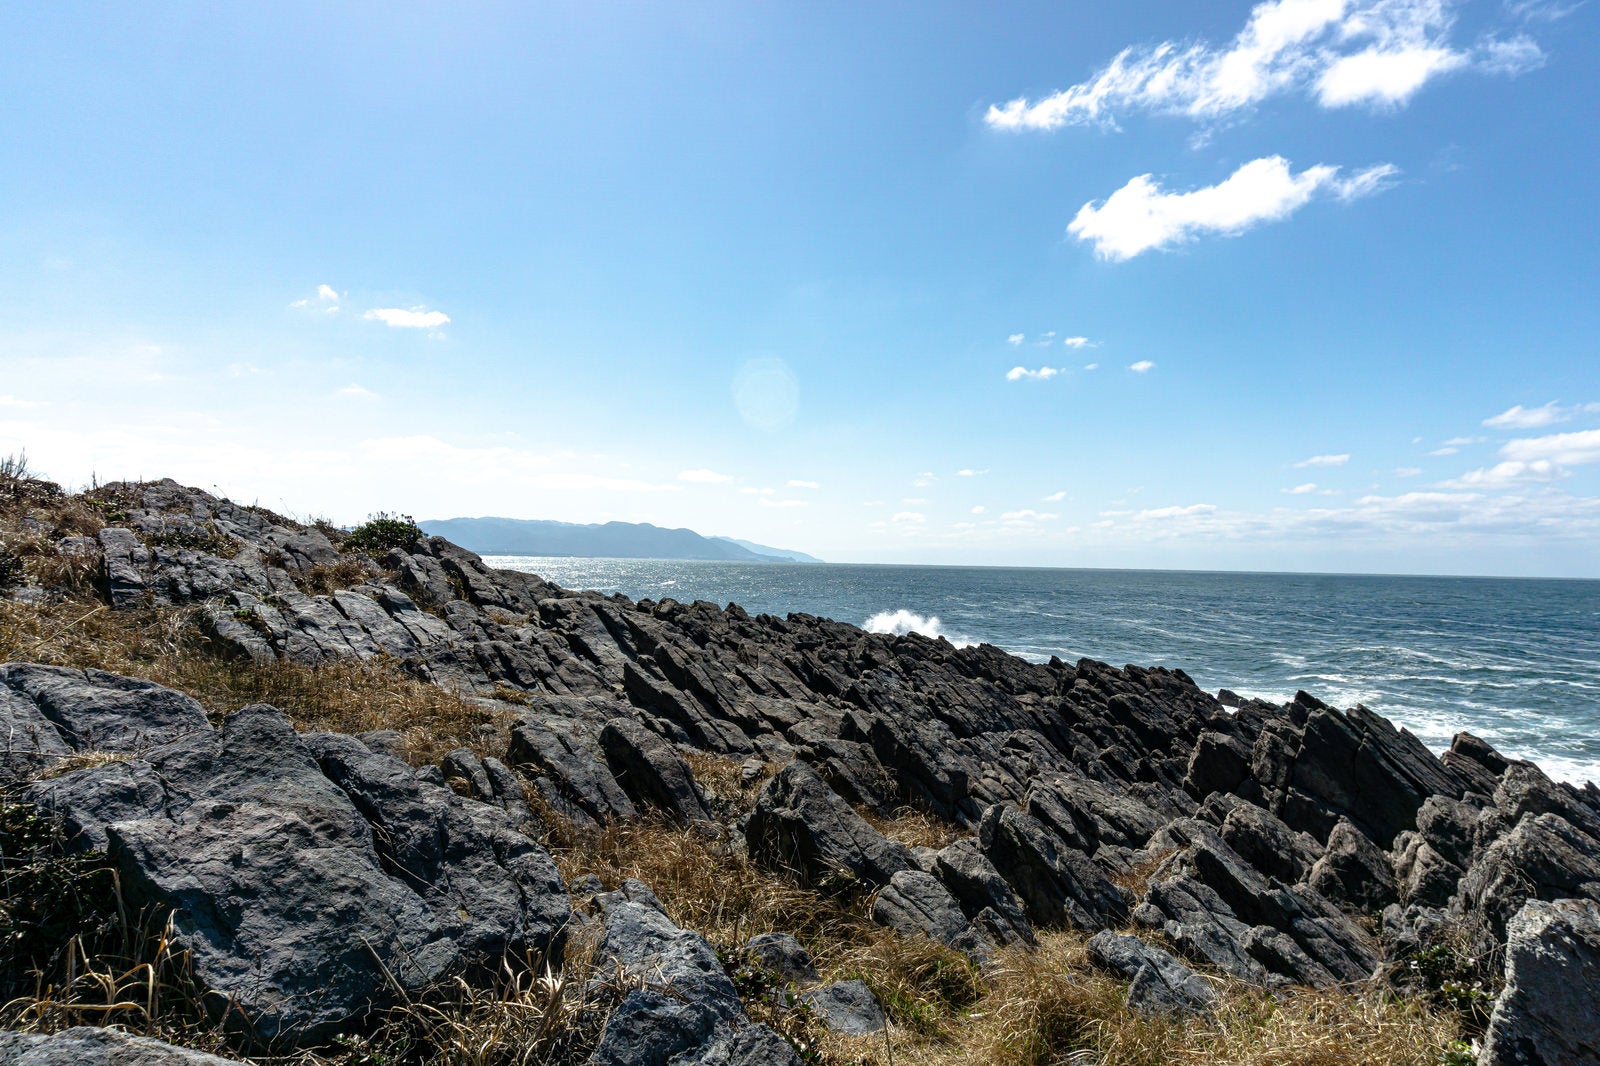 「流紋岩で出来た雄島の板状節理」の写真